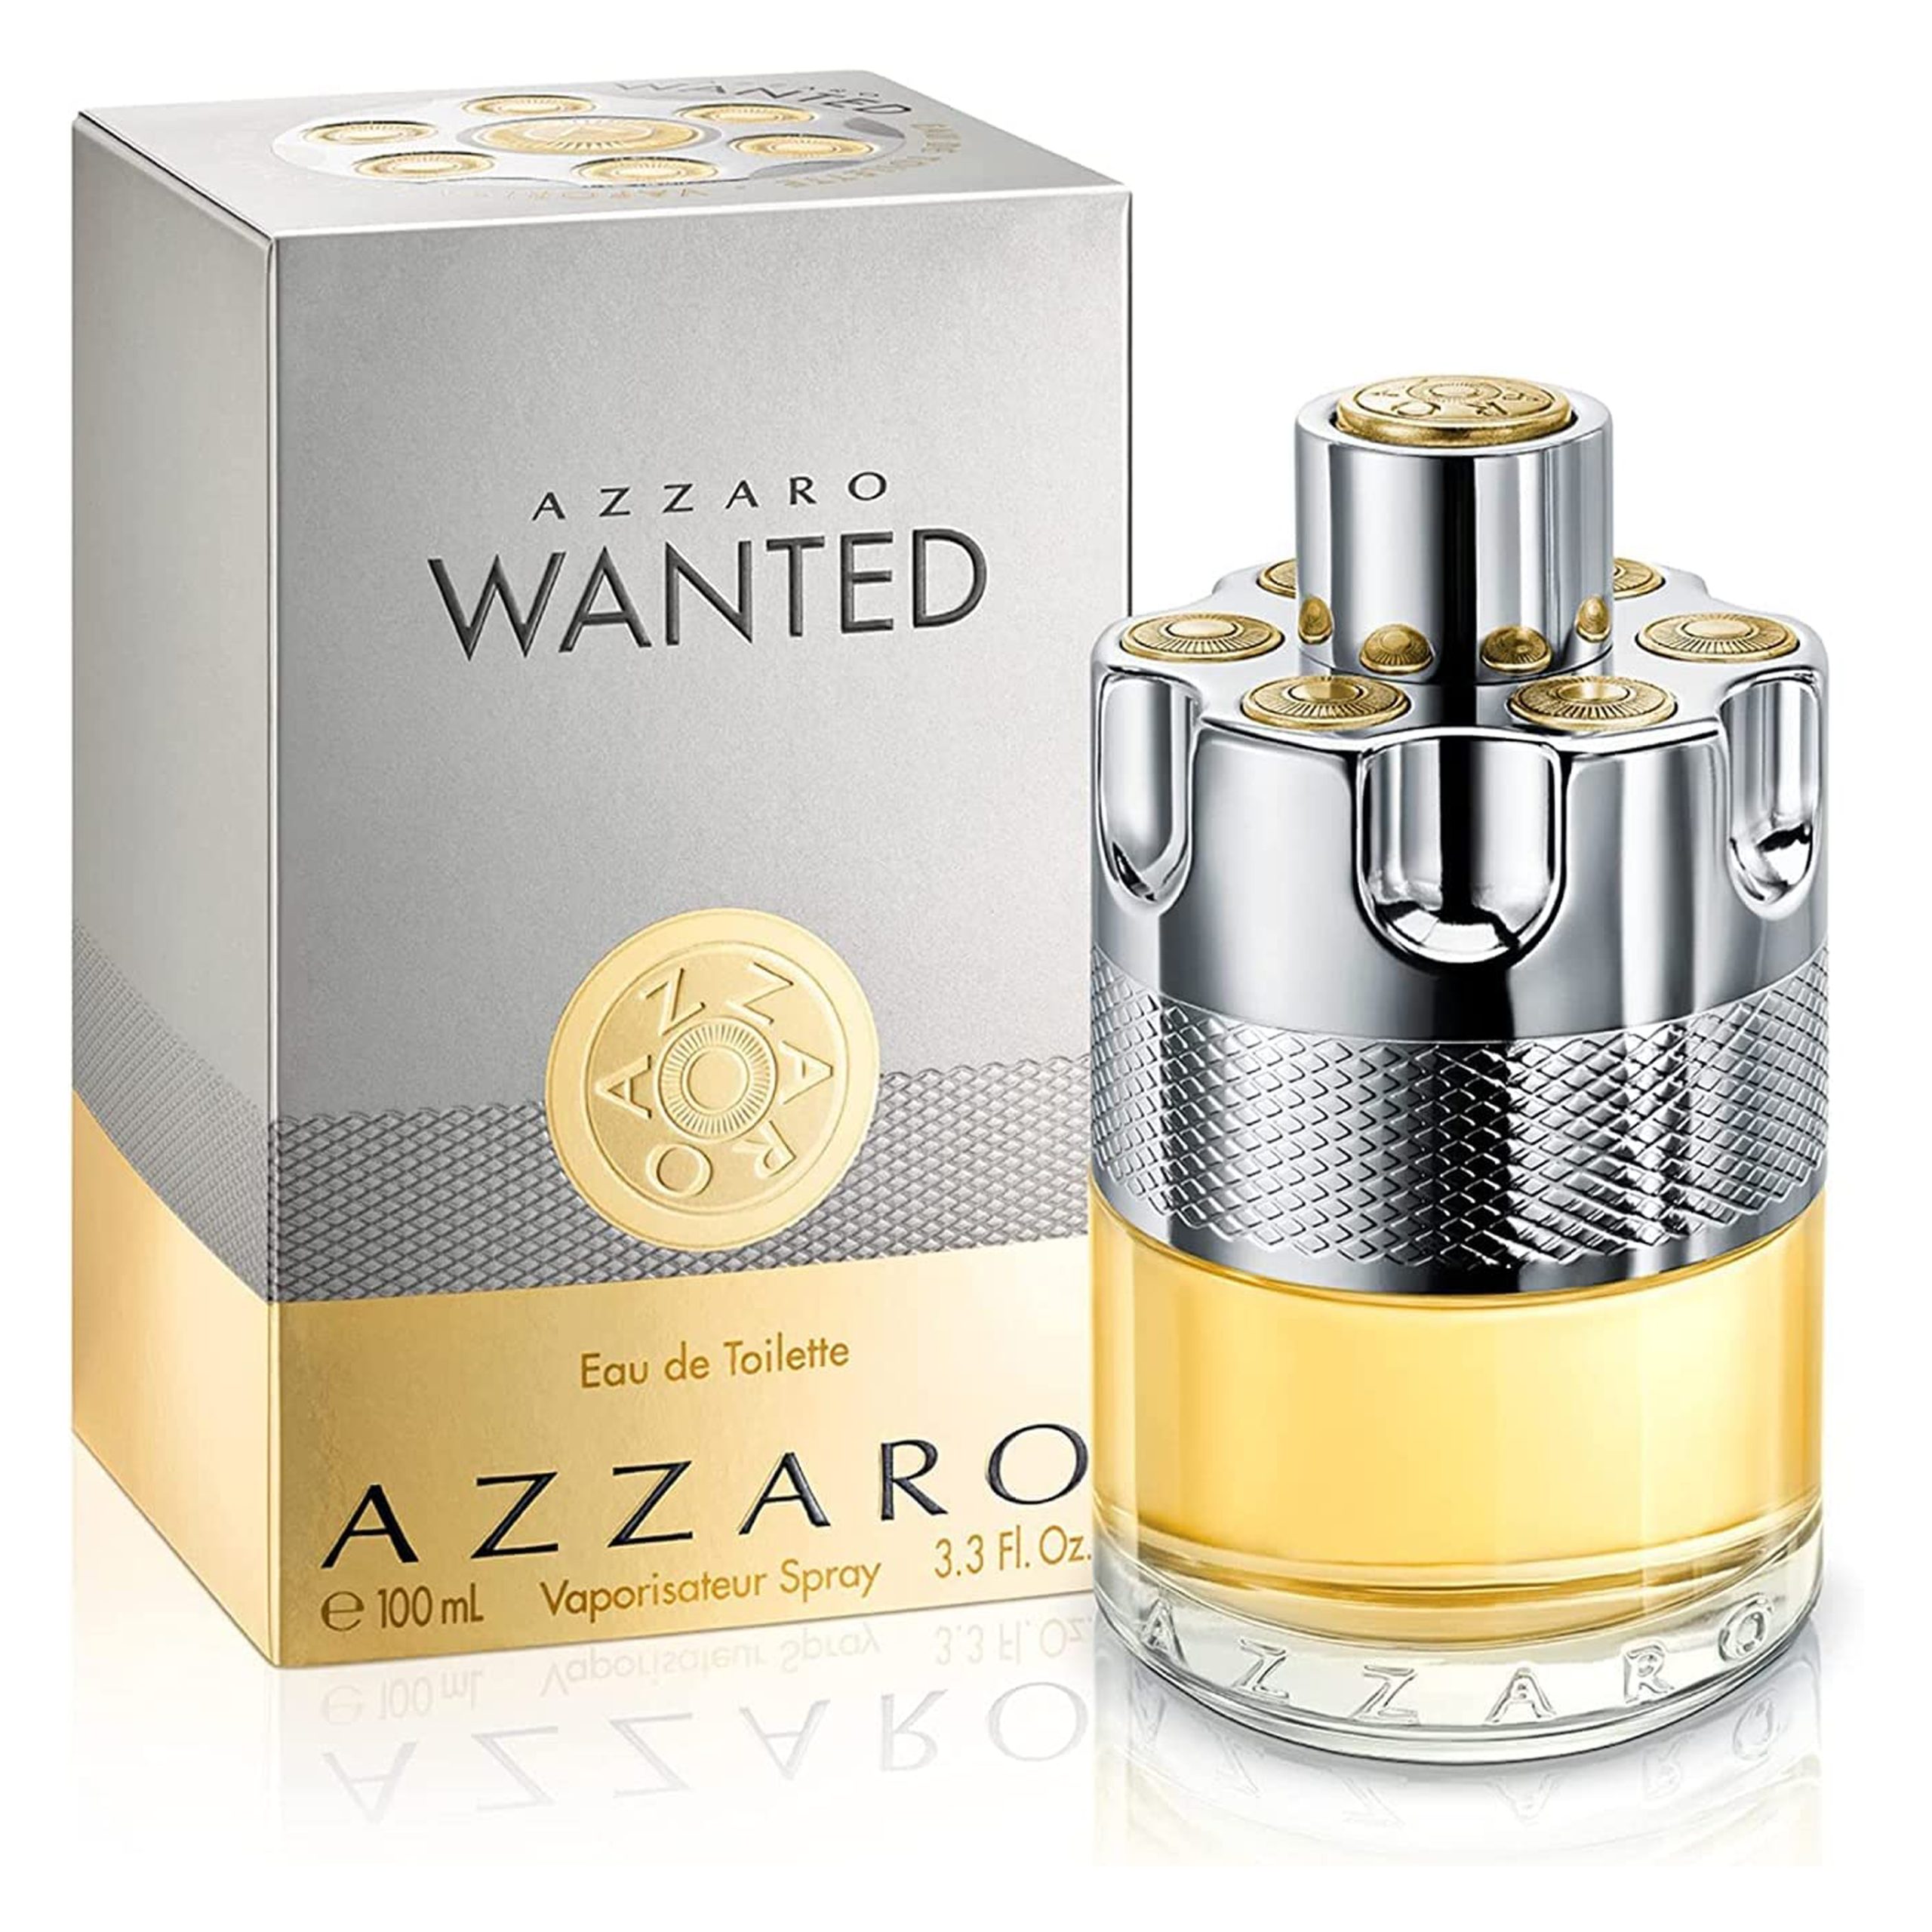 ادکلن مردانه آزارو وانتد ادو تویلت Azzaro Wanted – perfume for men